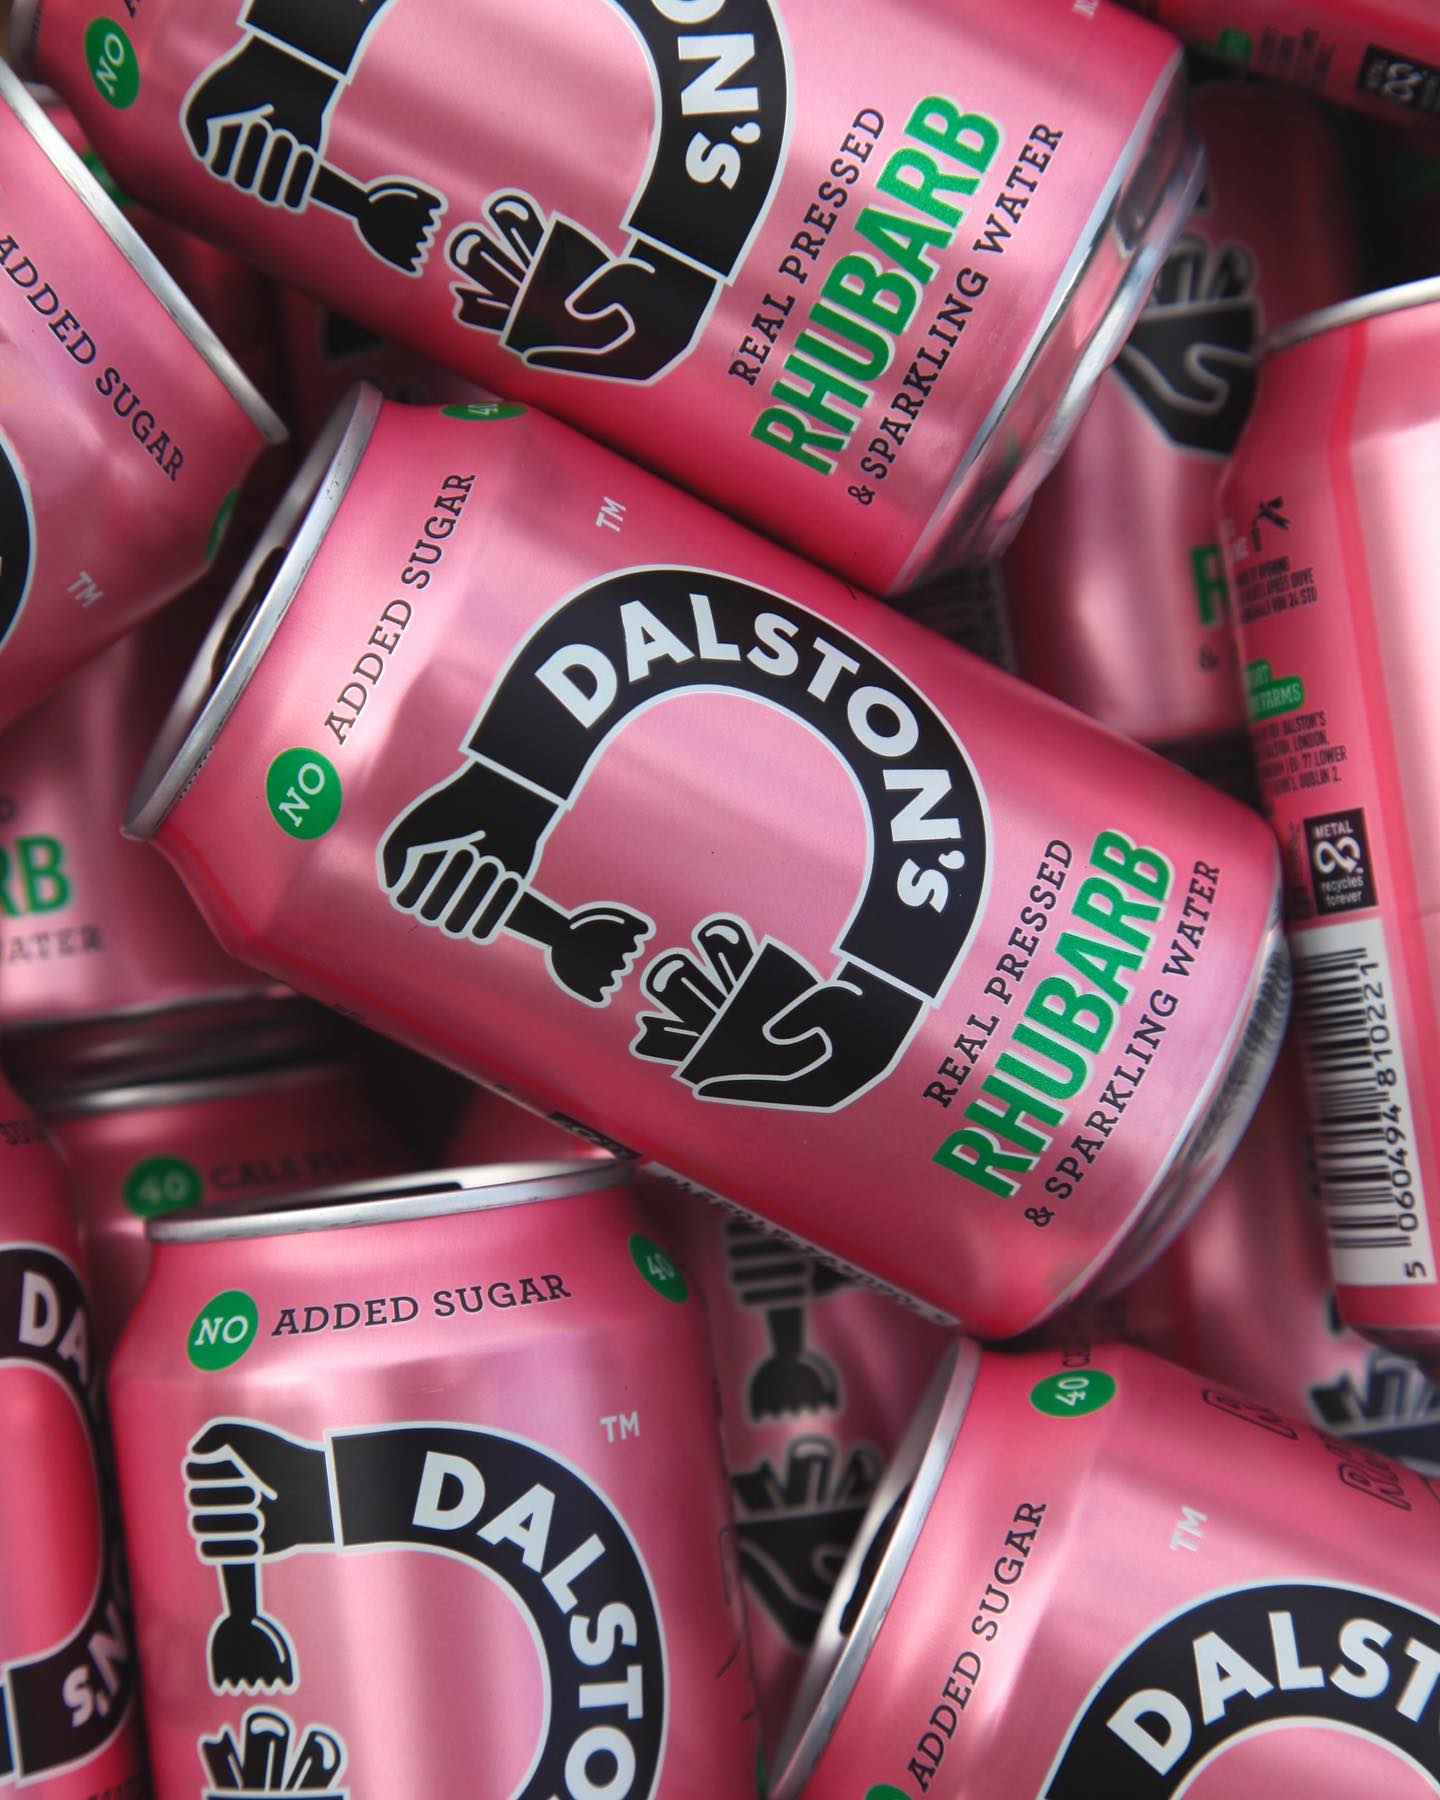 Dalston’s Soda